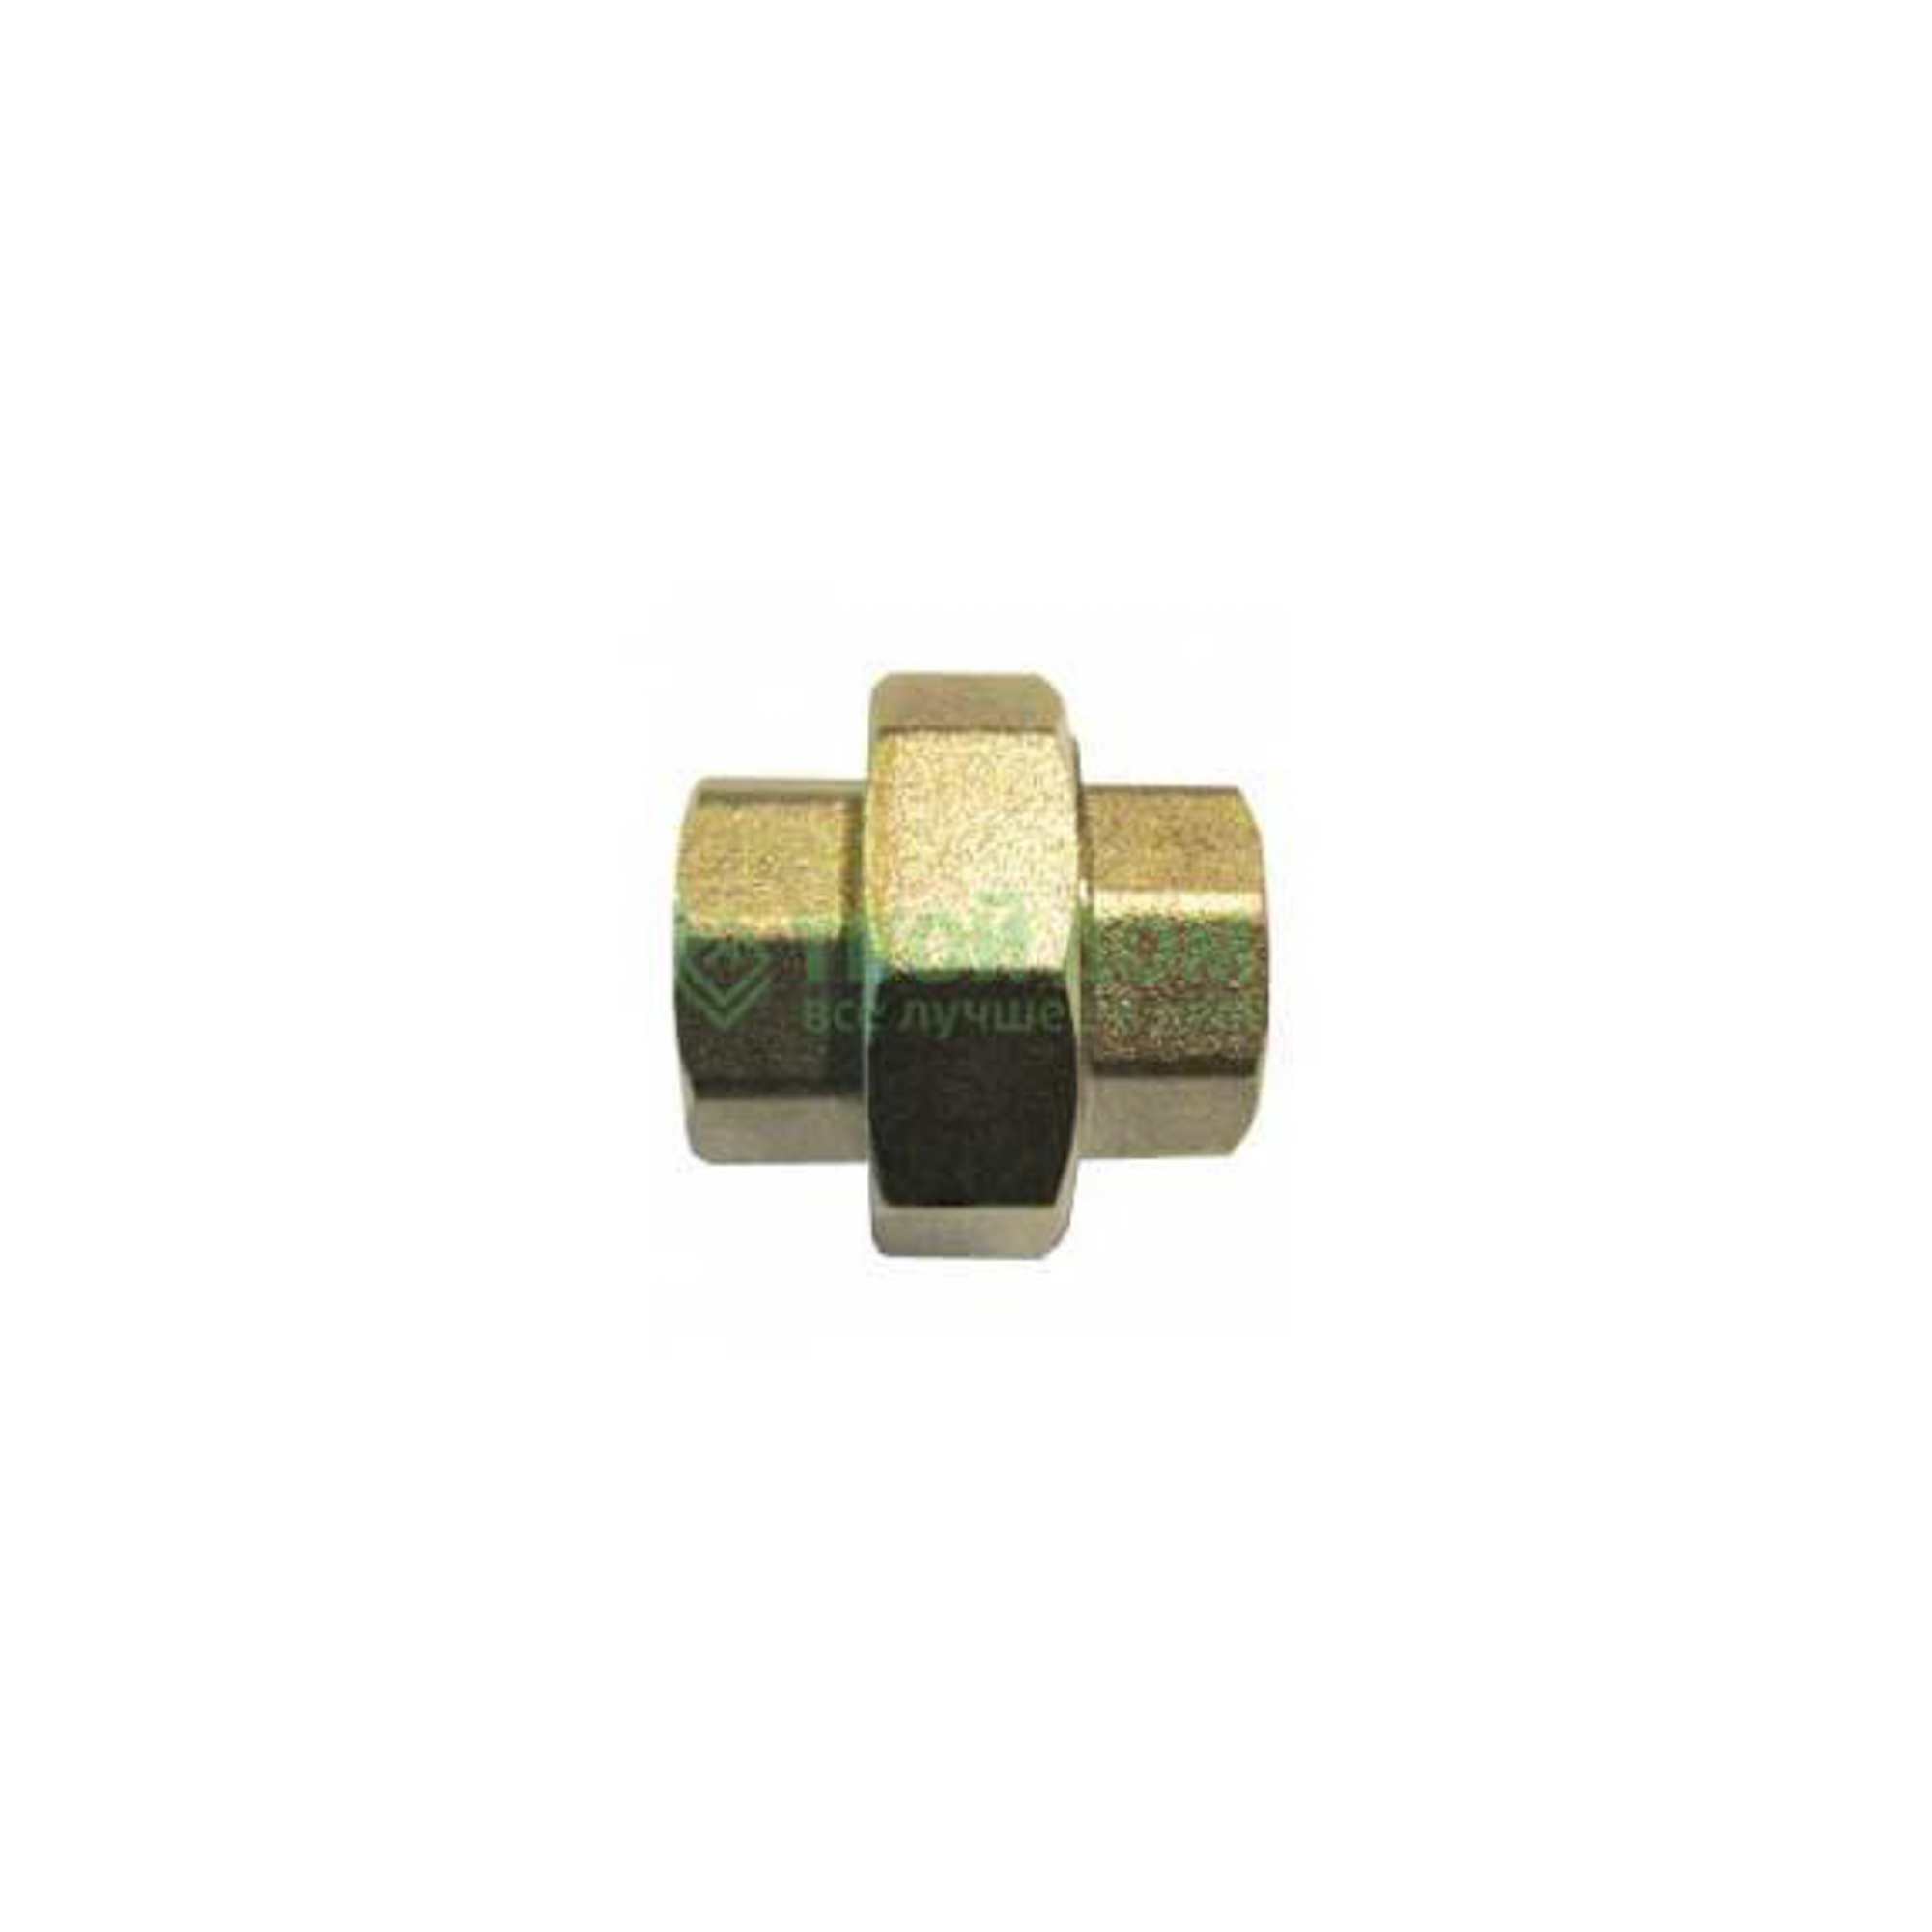 Соединитель Stc латунь ду15 м/м америк5679 (027-5379), цвет бронзовый